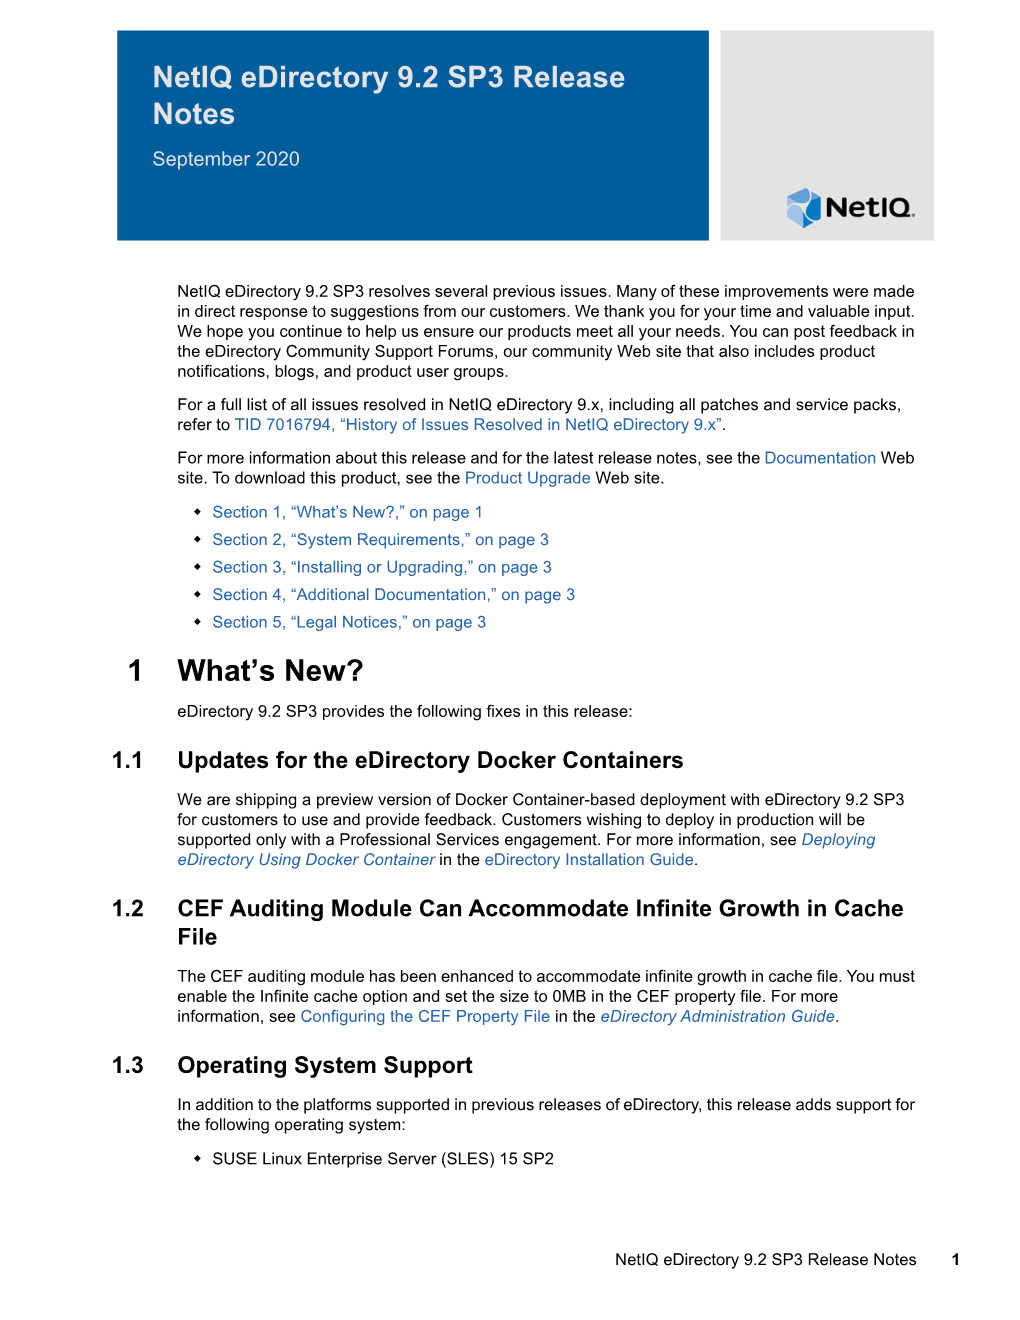 Netiq Edirectory 9.2 SP3 Release Notes September 2020